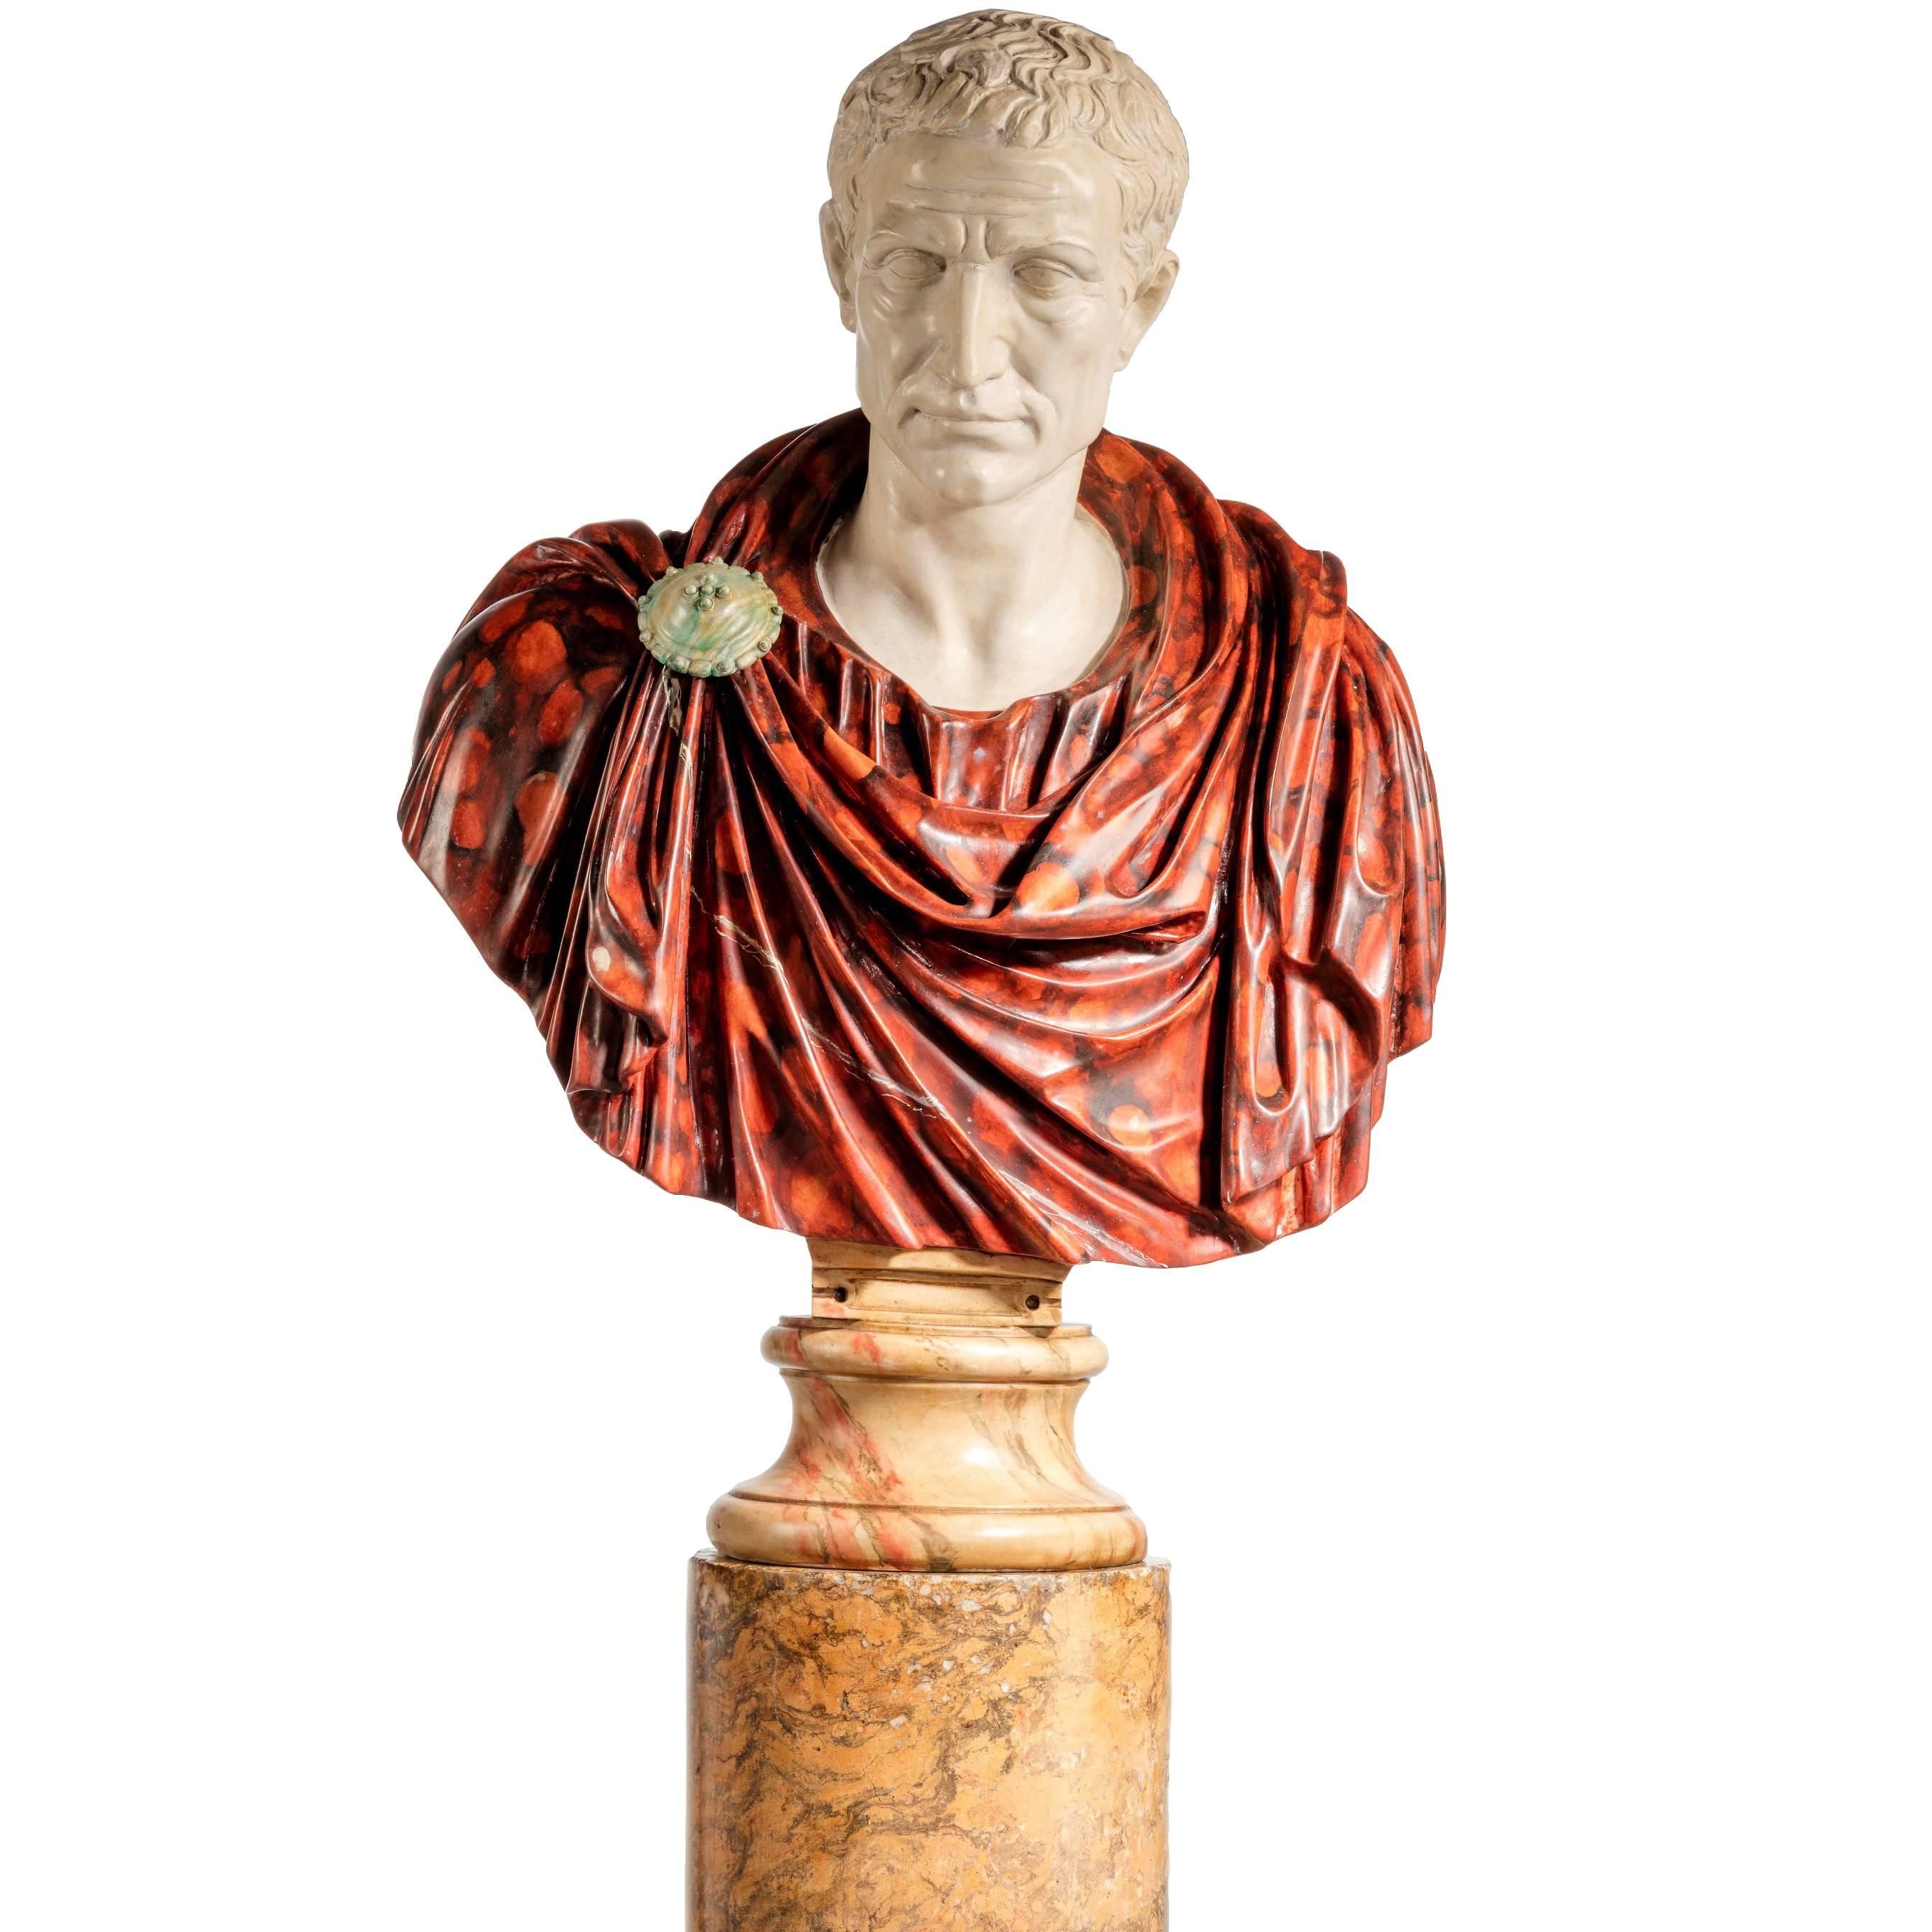 Bust of a Roman Politician Marcus Junius Brutus